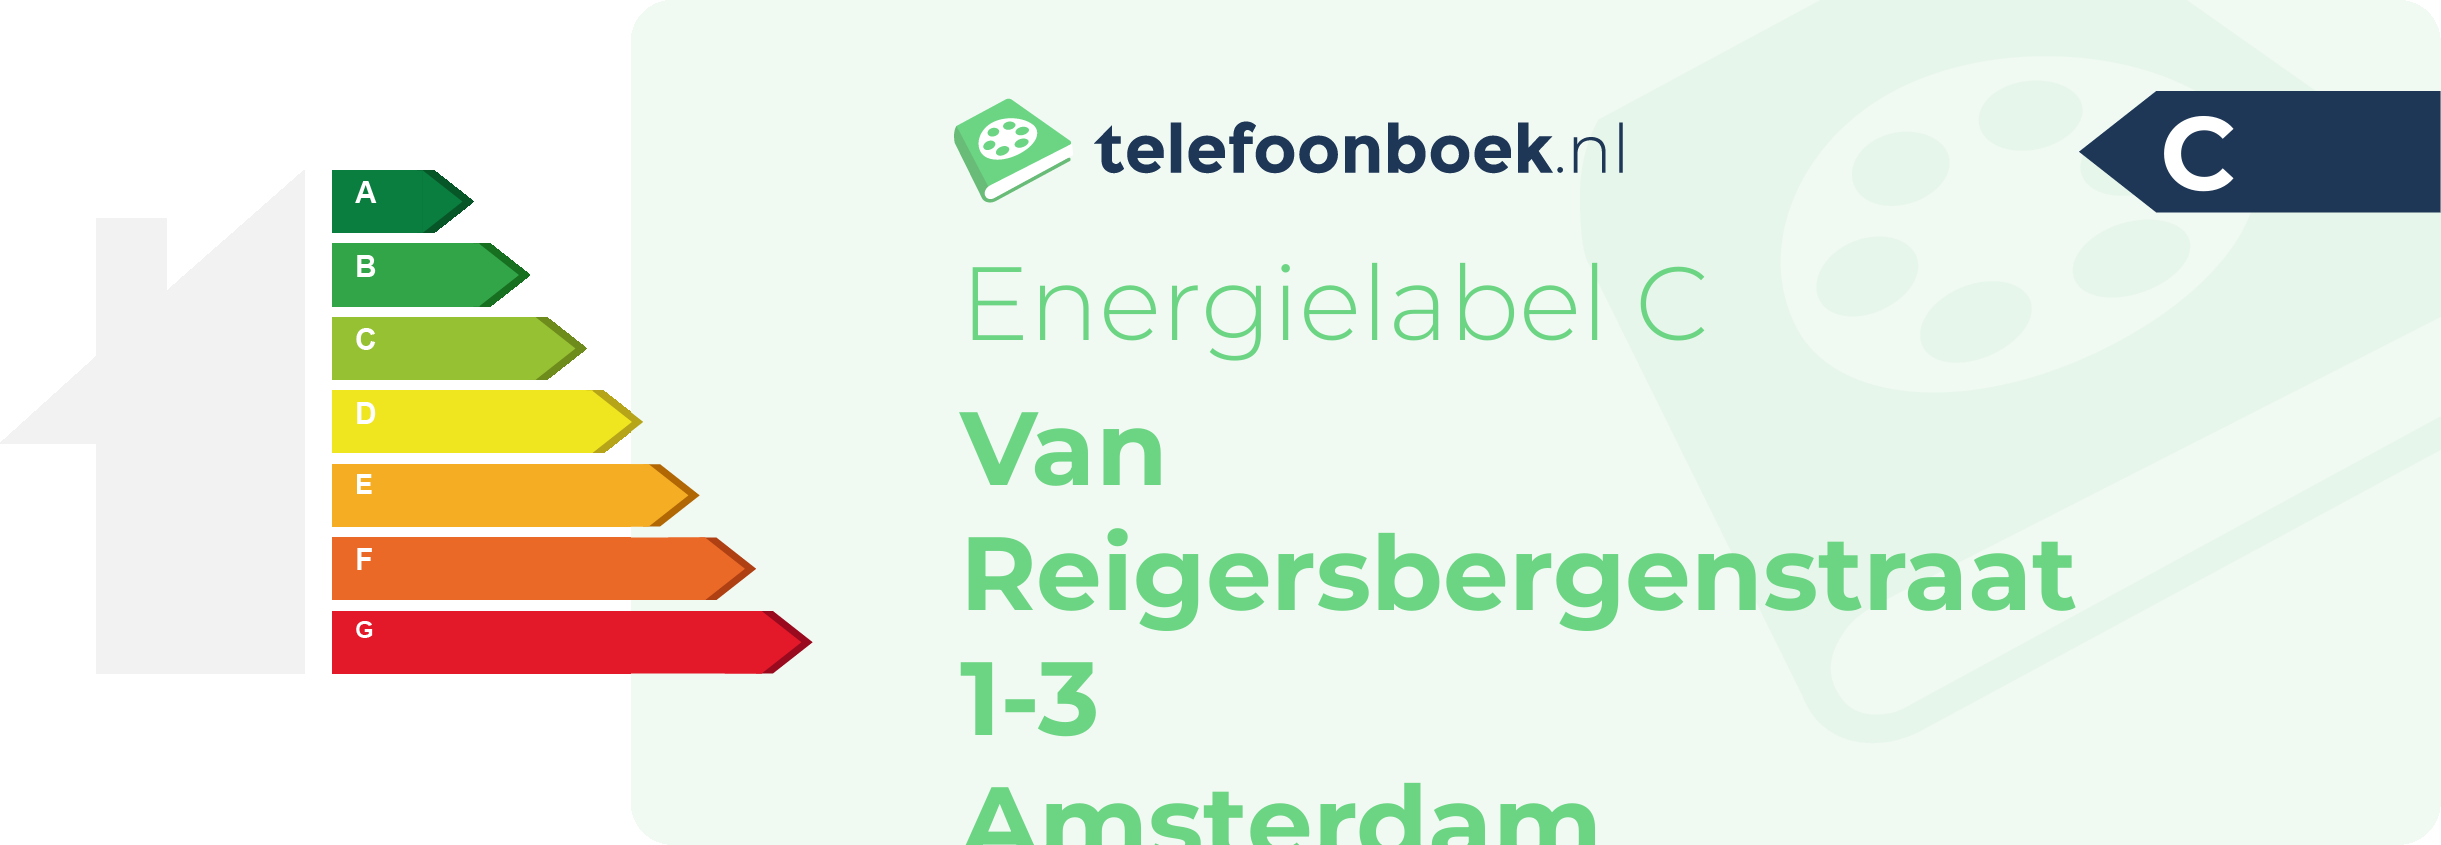 Energielabel Van Reigersbergenstraat 1-3 Amsterdam